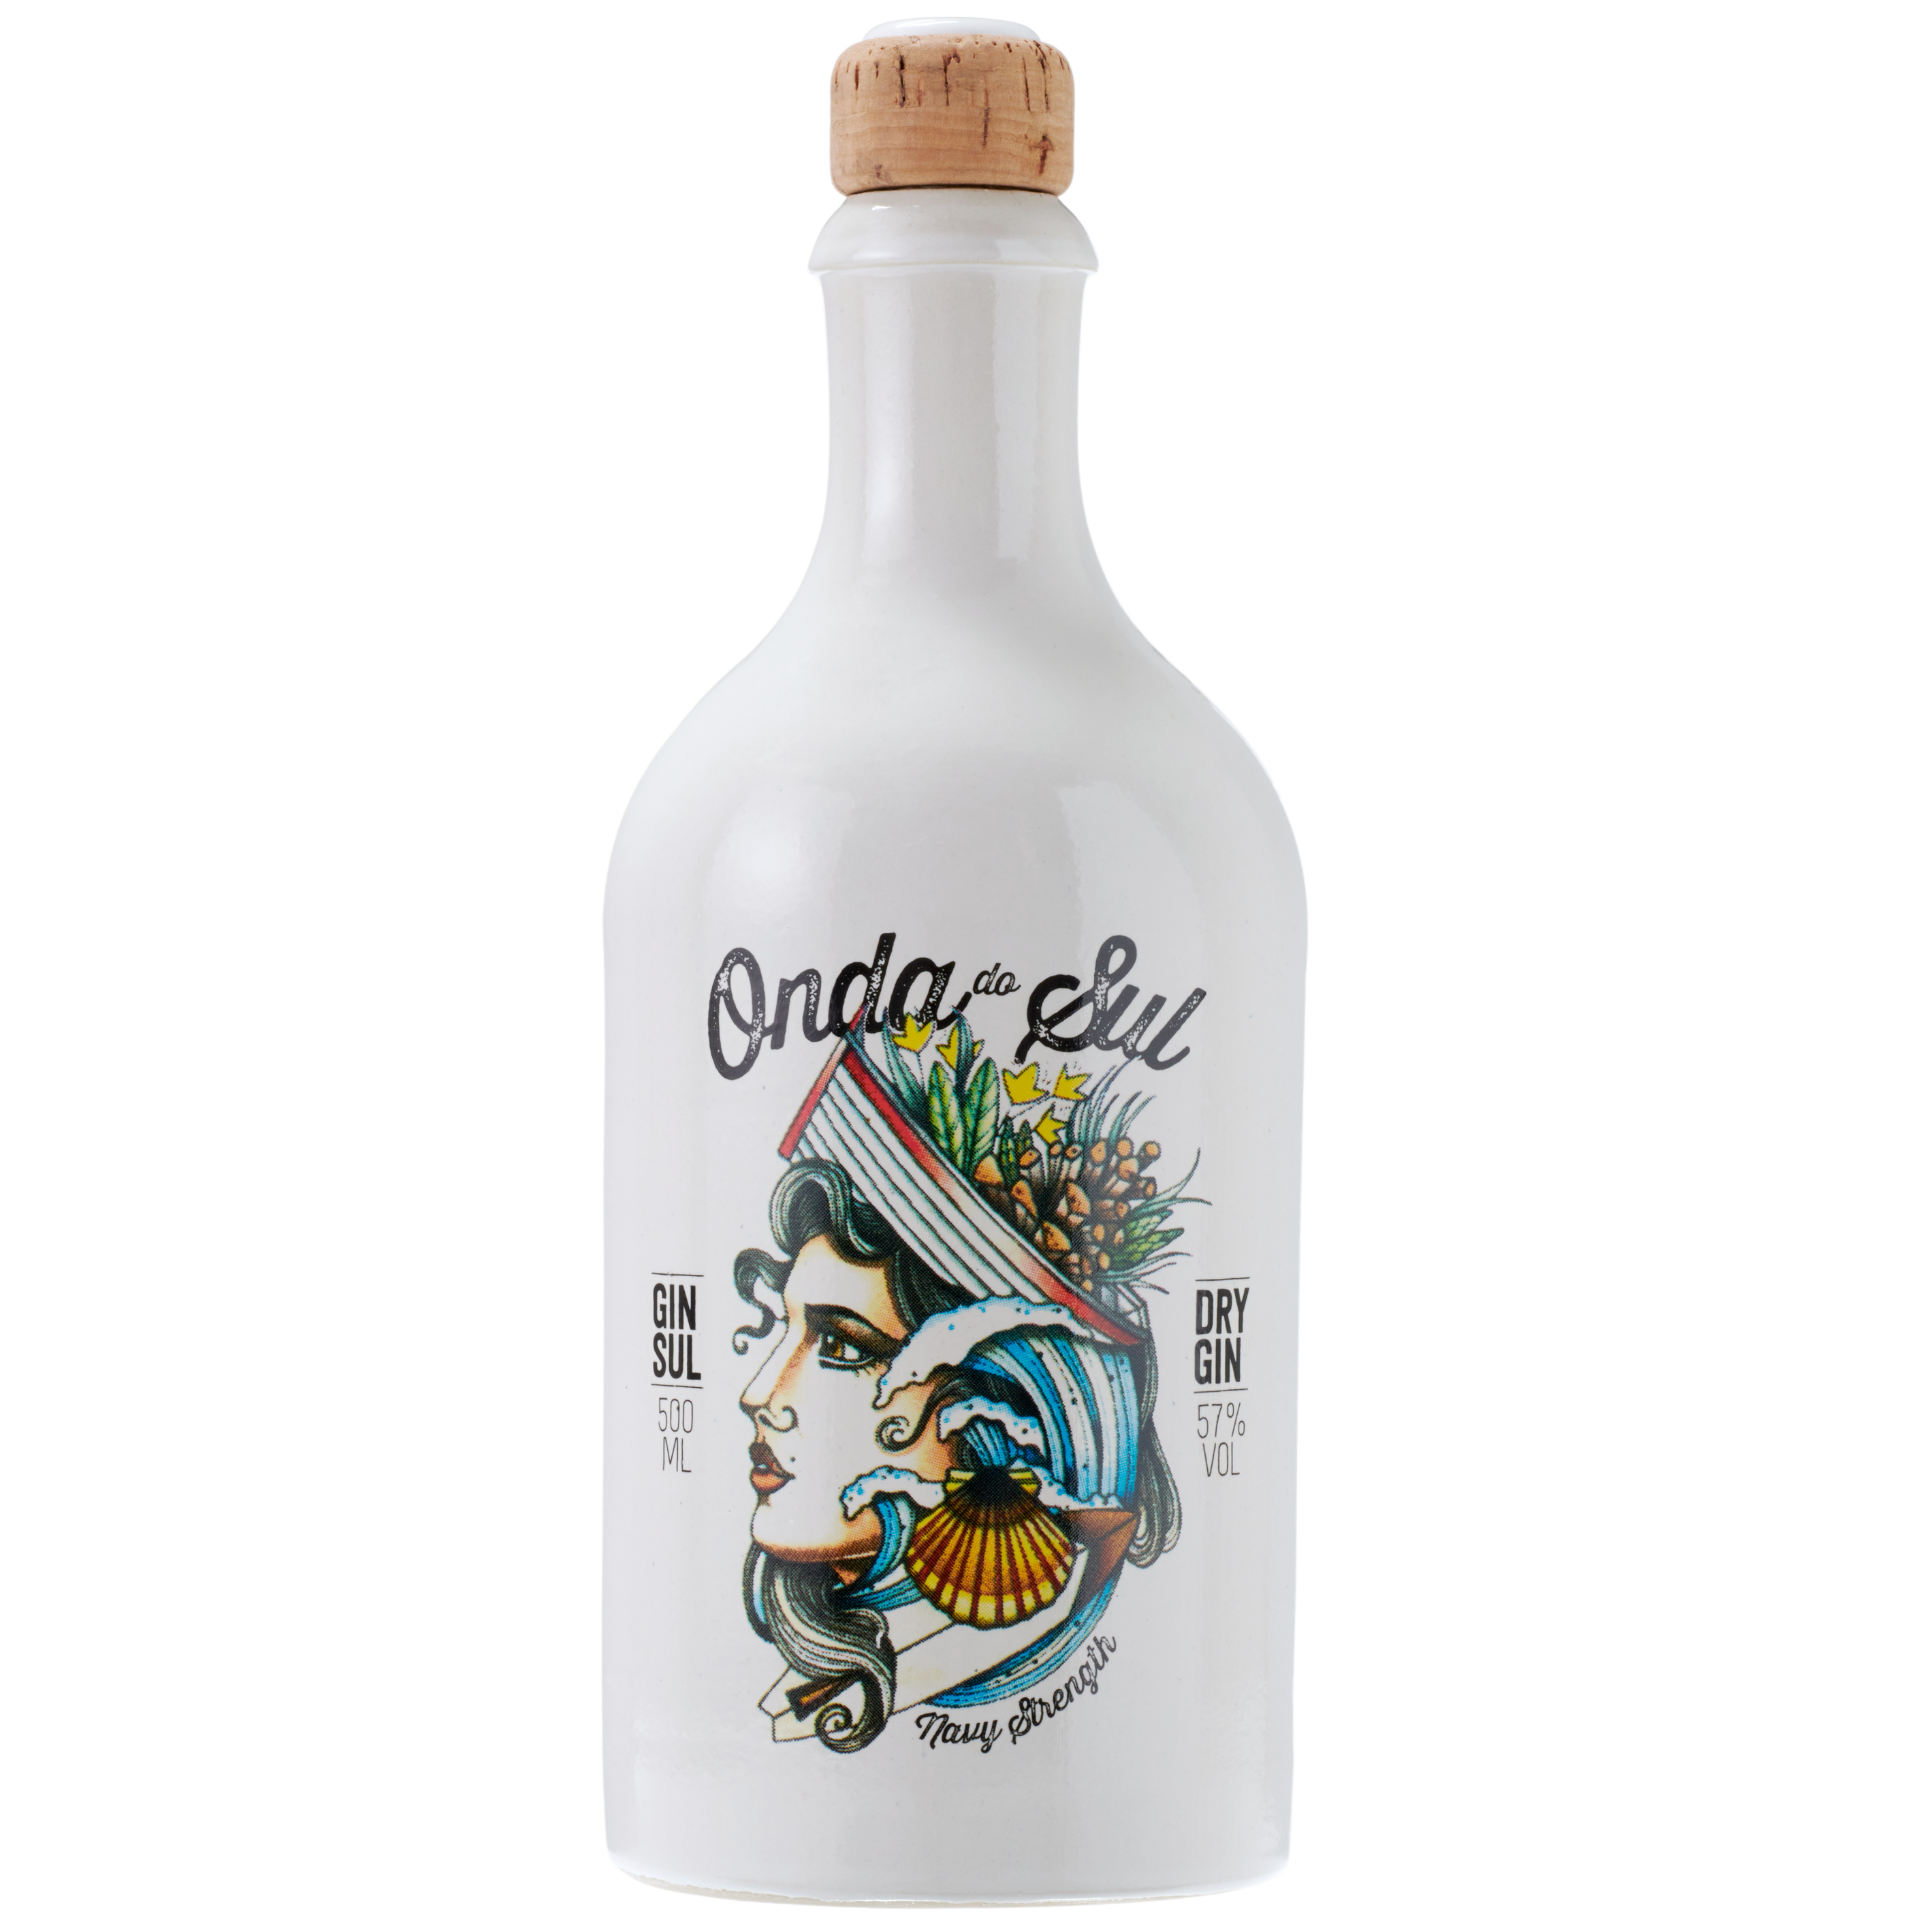 Gin Sul Onda do Sul Gin 57% 0,5l